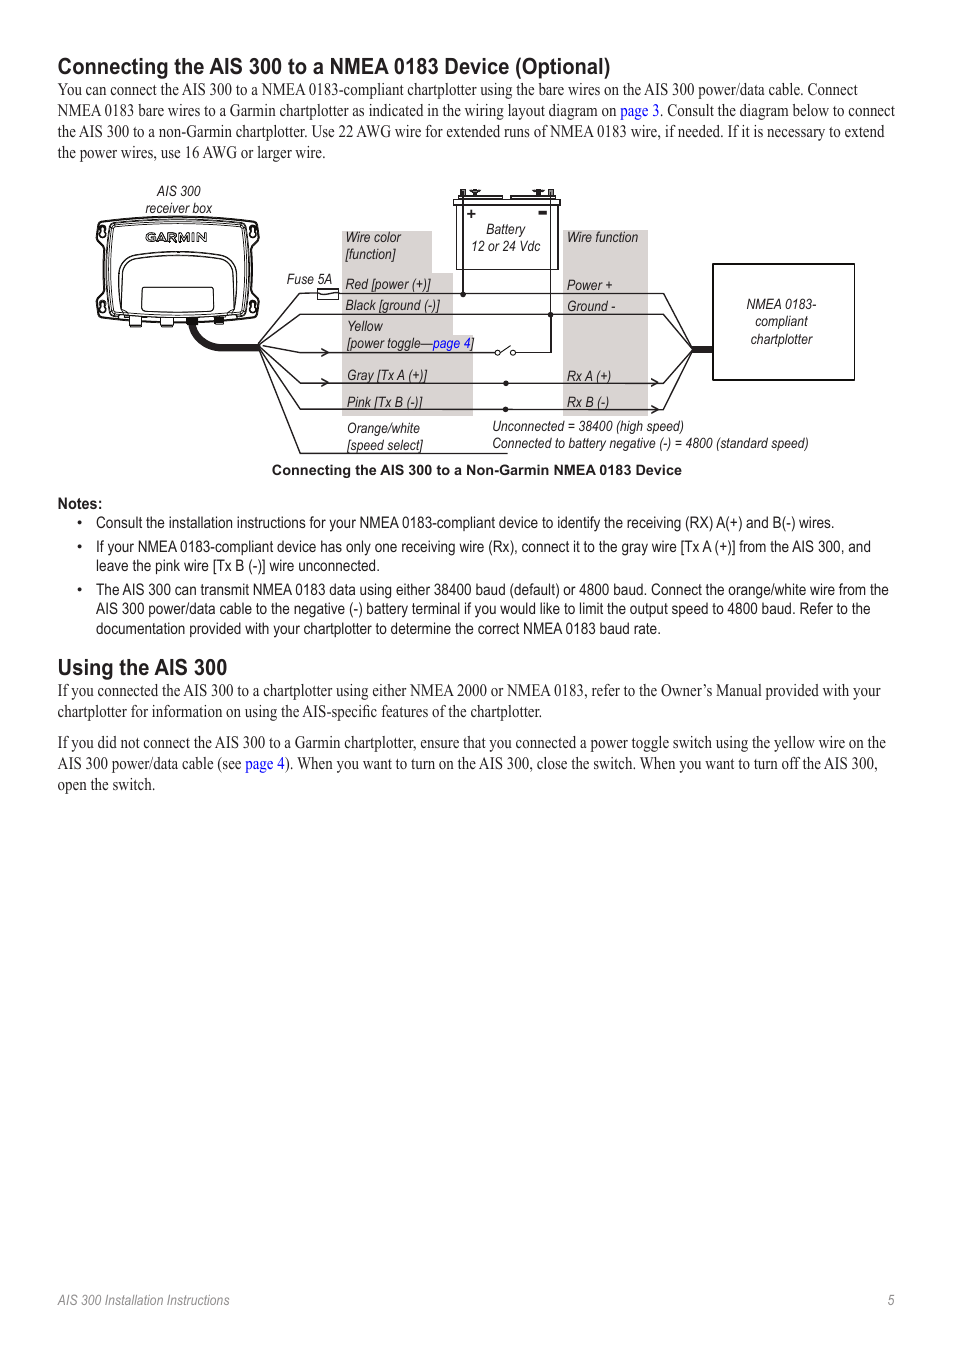 Using the ais 300 | Garmin 190-01178-00 User Manual | Page 5 / 8 | Original  mode